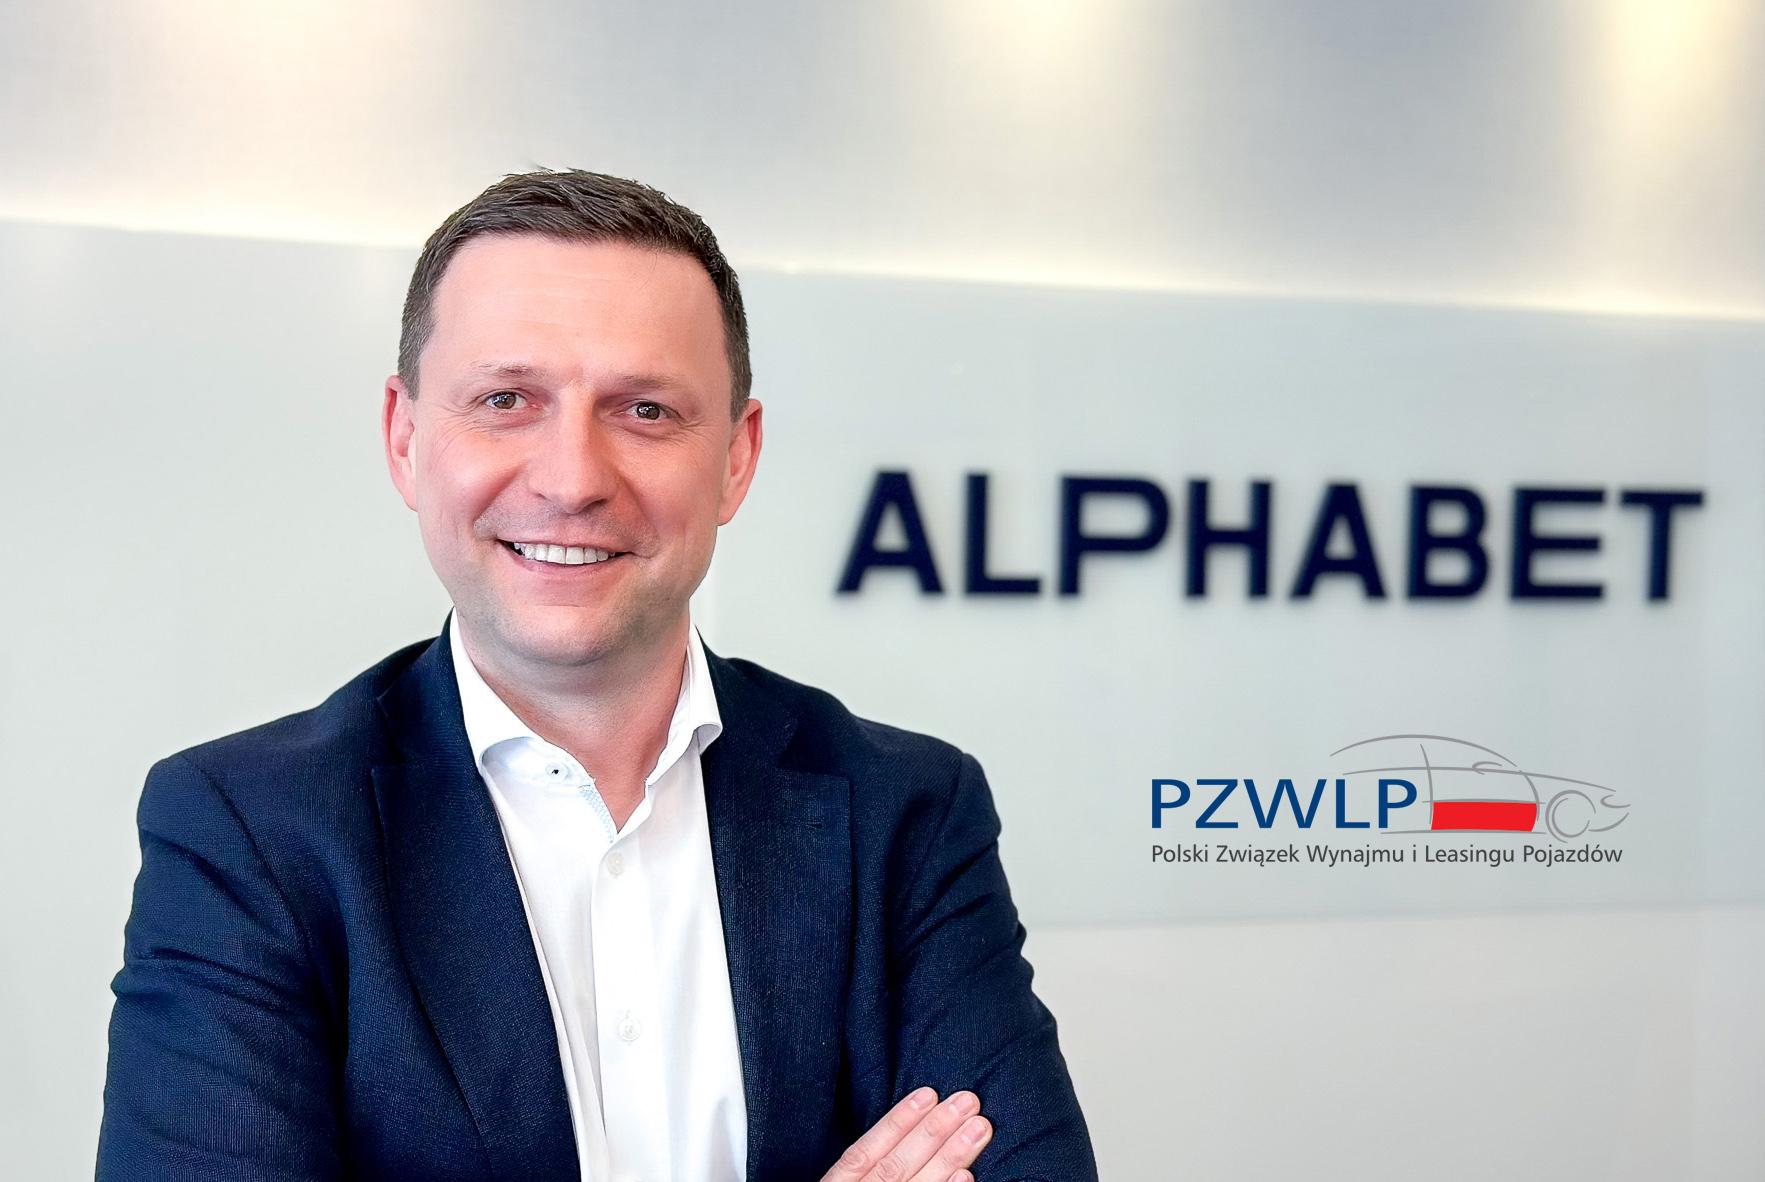 Piotr Wróbel, CCO Alphabet Polska, PZWLP